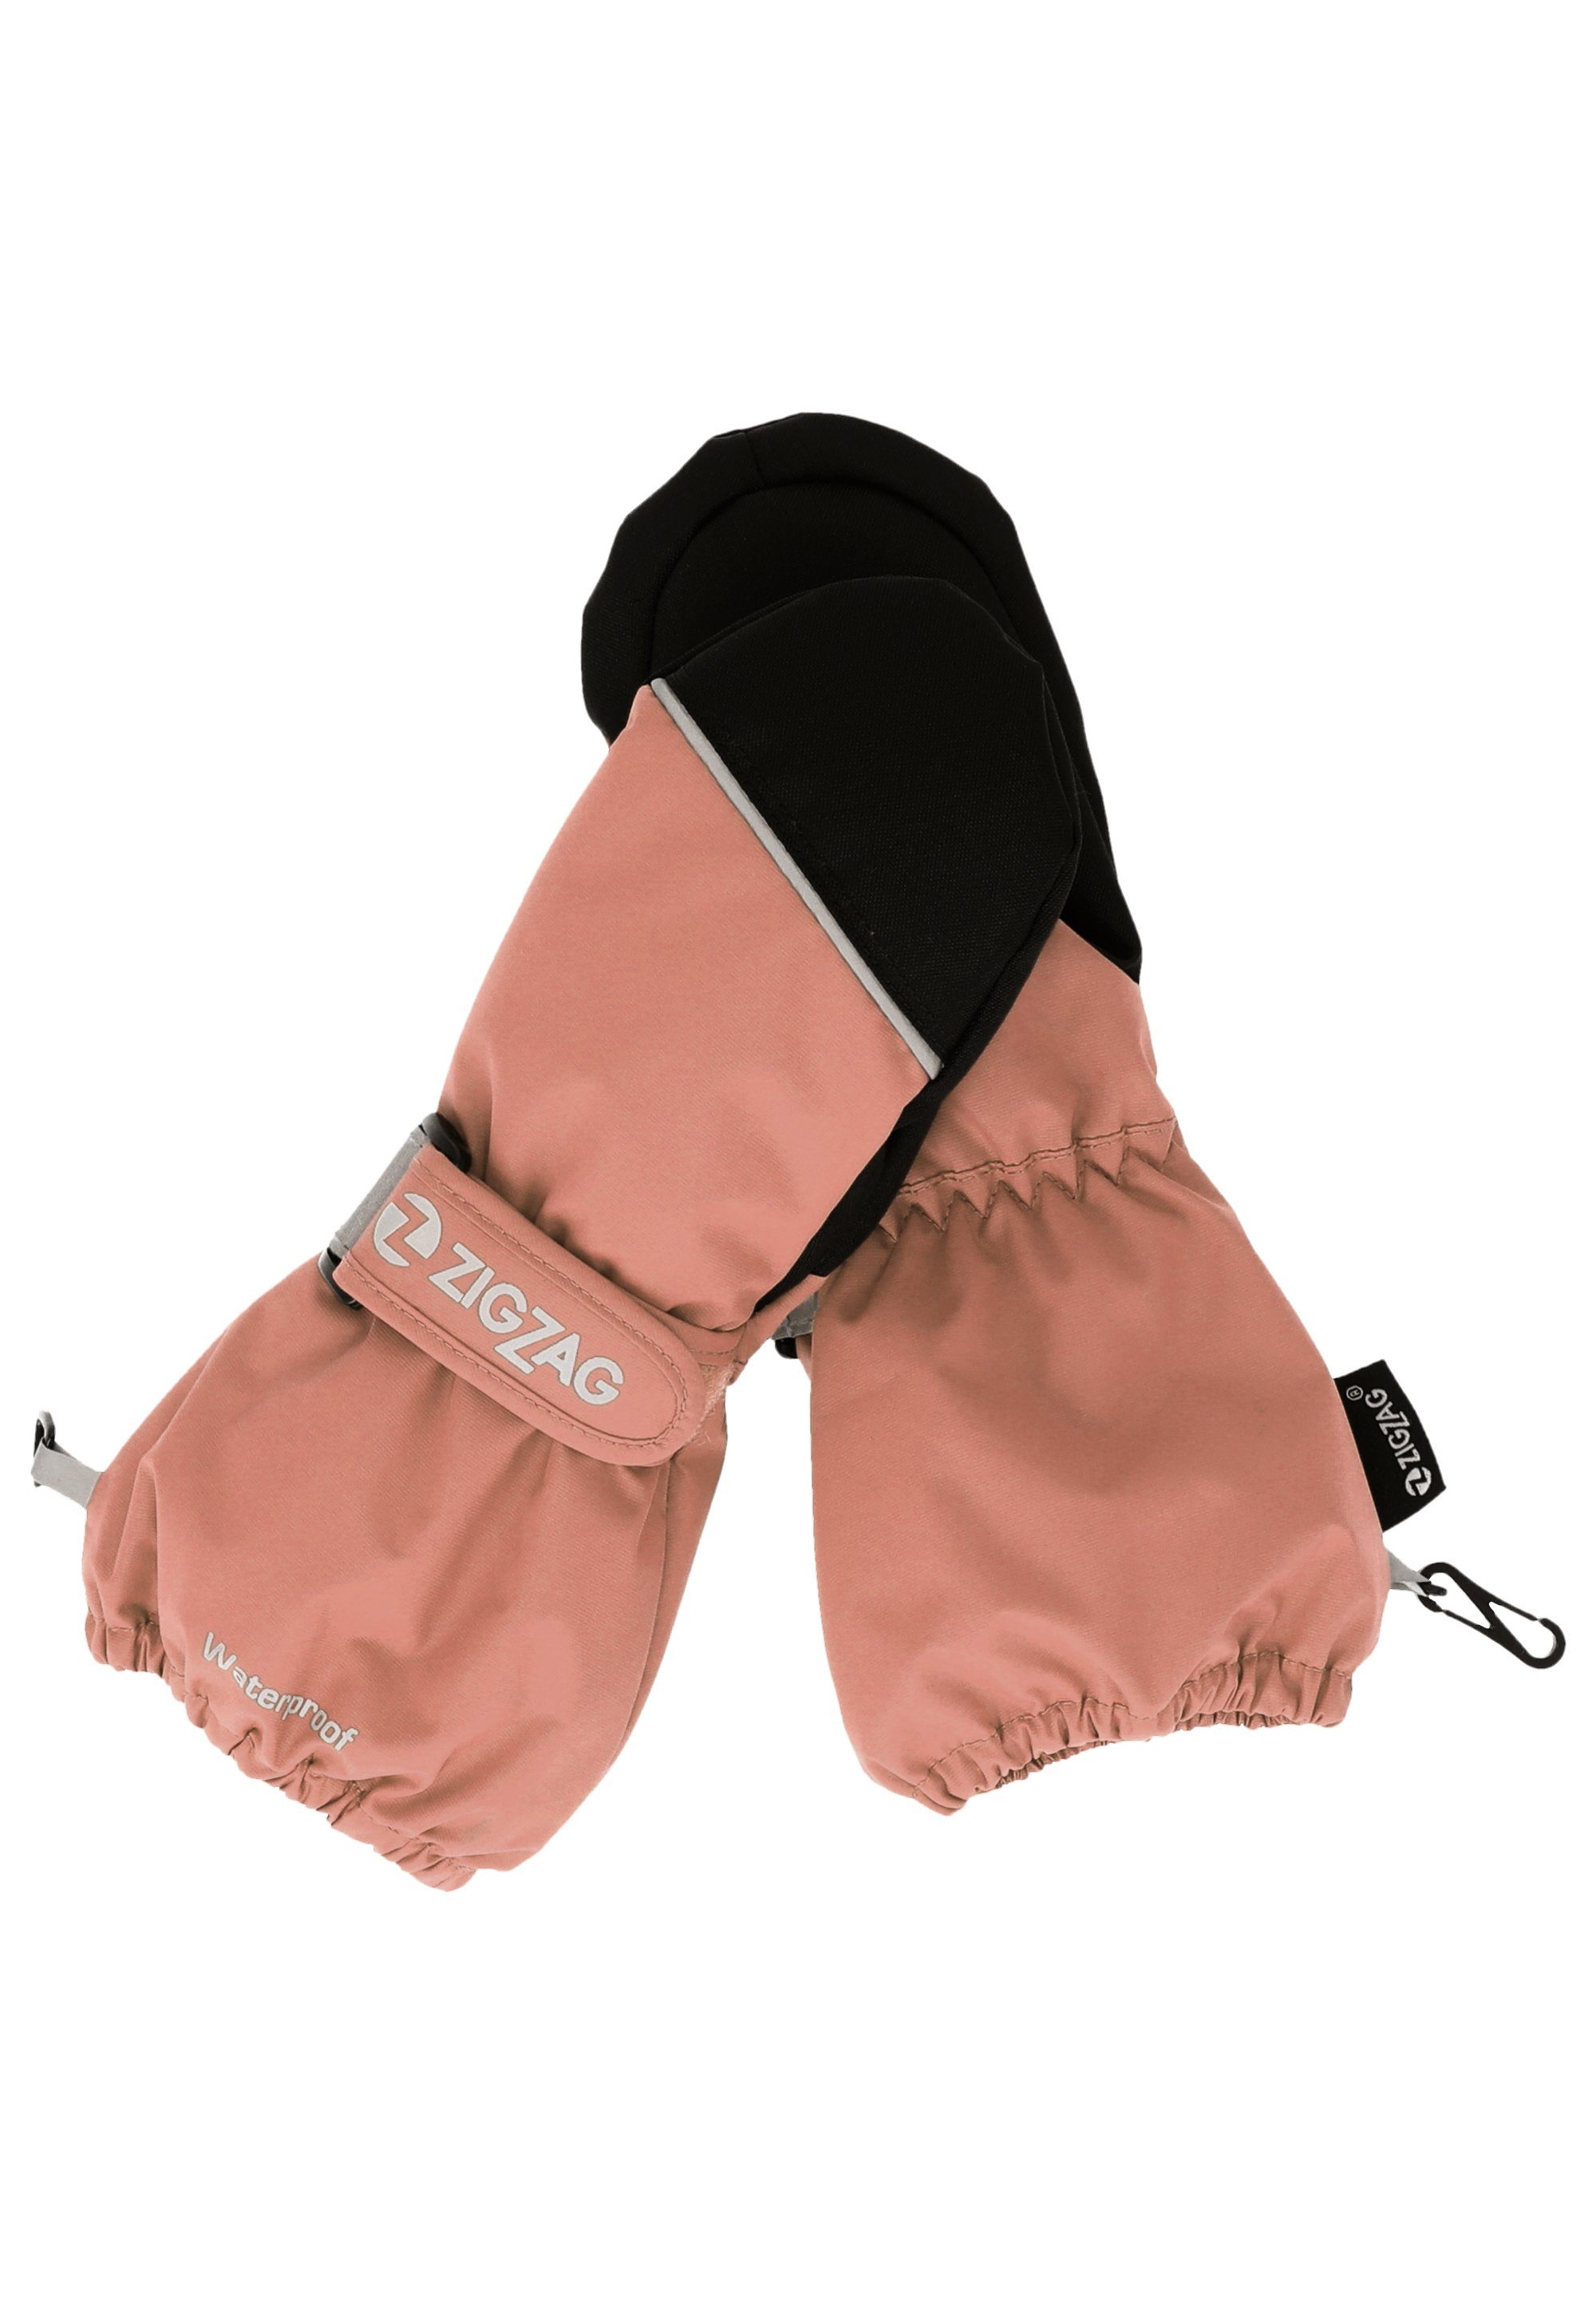 ZIGZAG komfortabler Kempston Wintersport-Ausstattung rosa Skihandschuhe mit